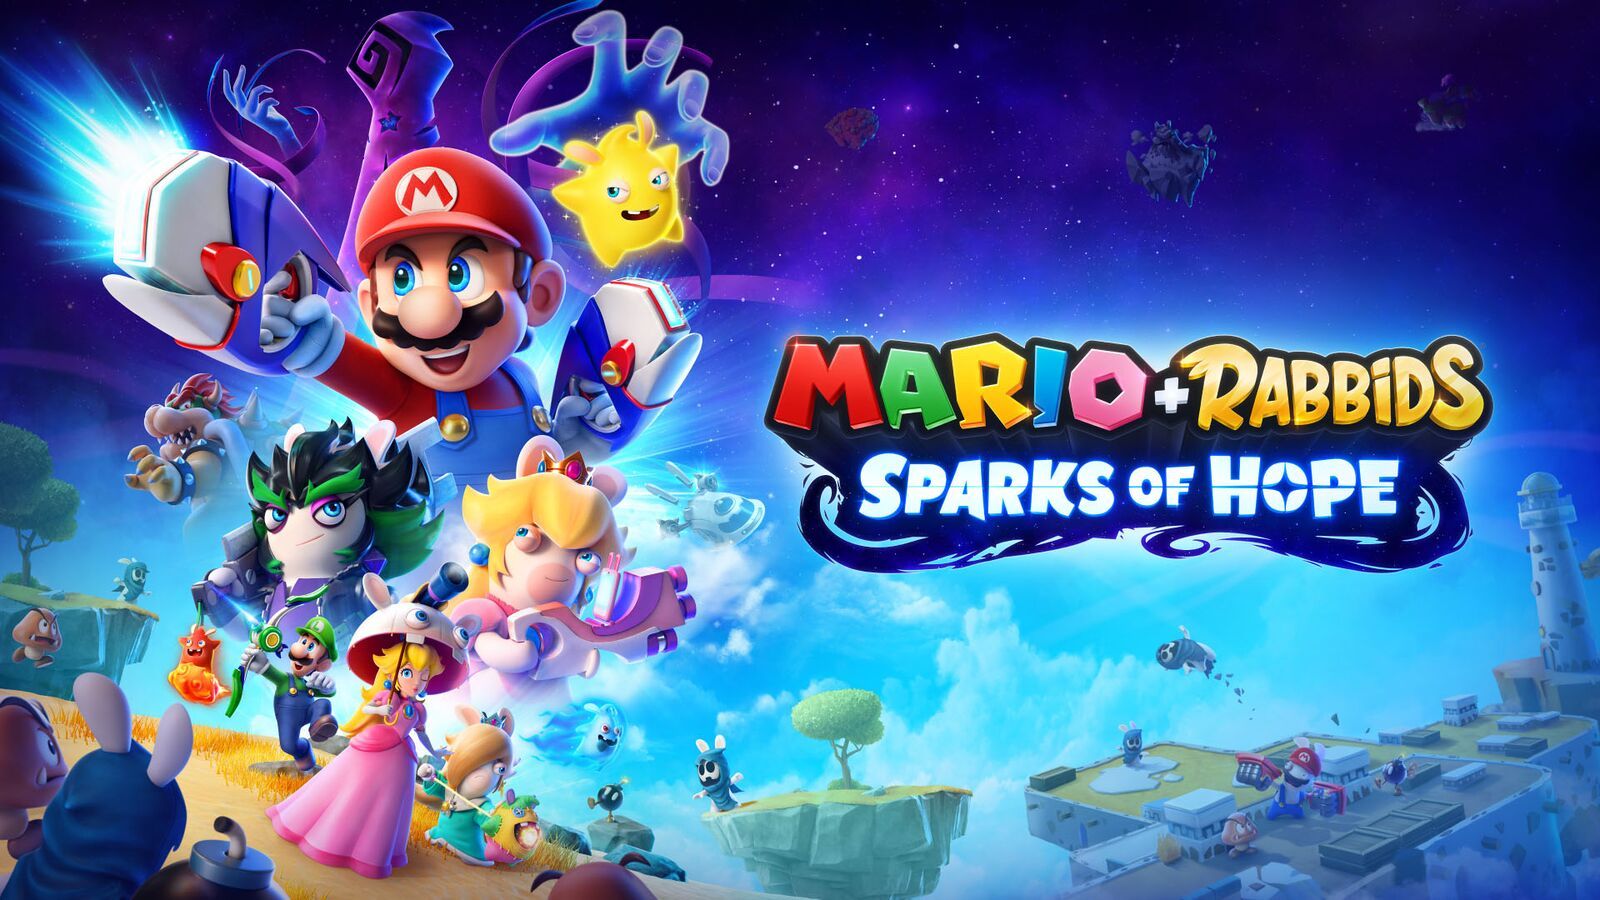 نقد و بررسی بازی Mario + Rabbids Sparks of Hope؛ بازگشت ماریوی محبوب !